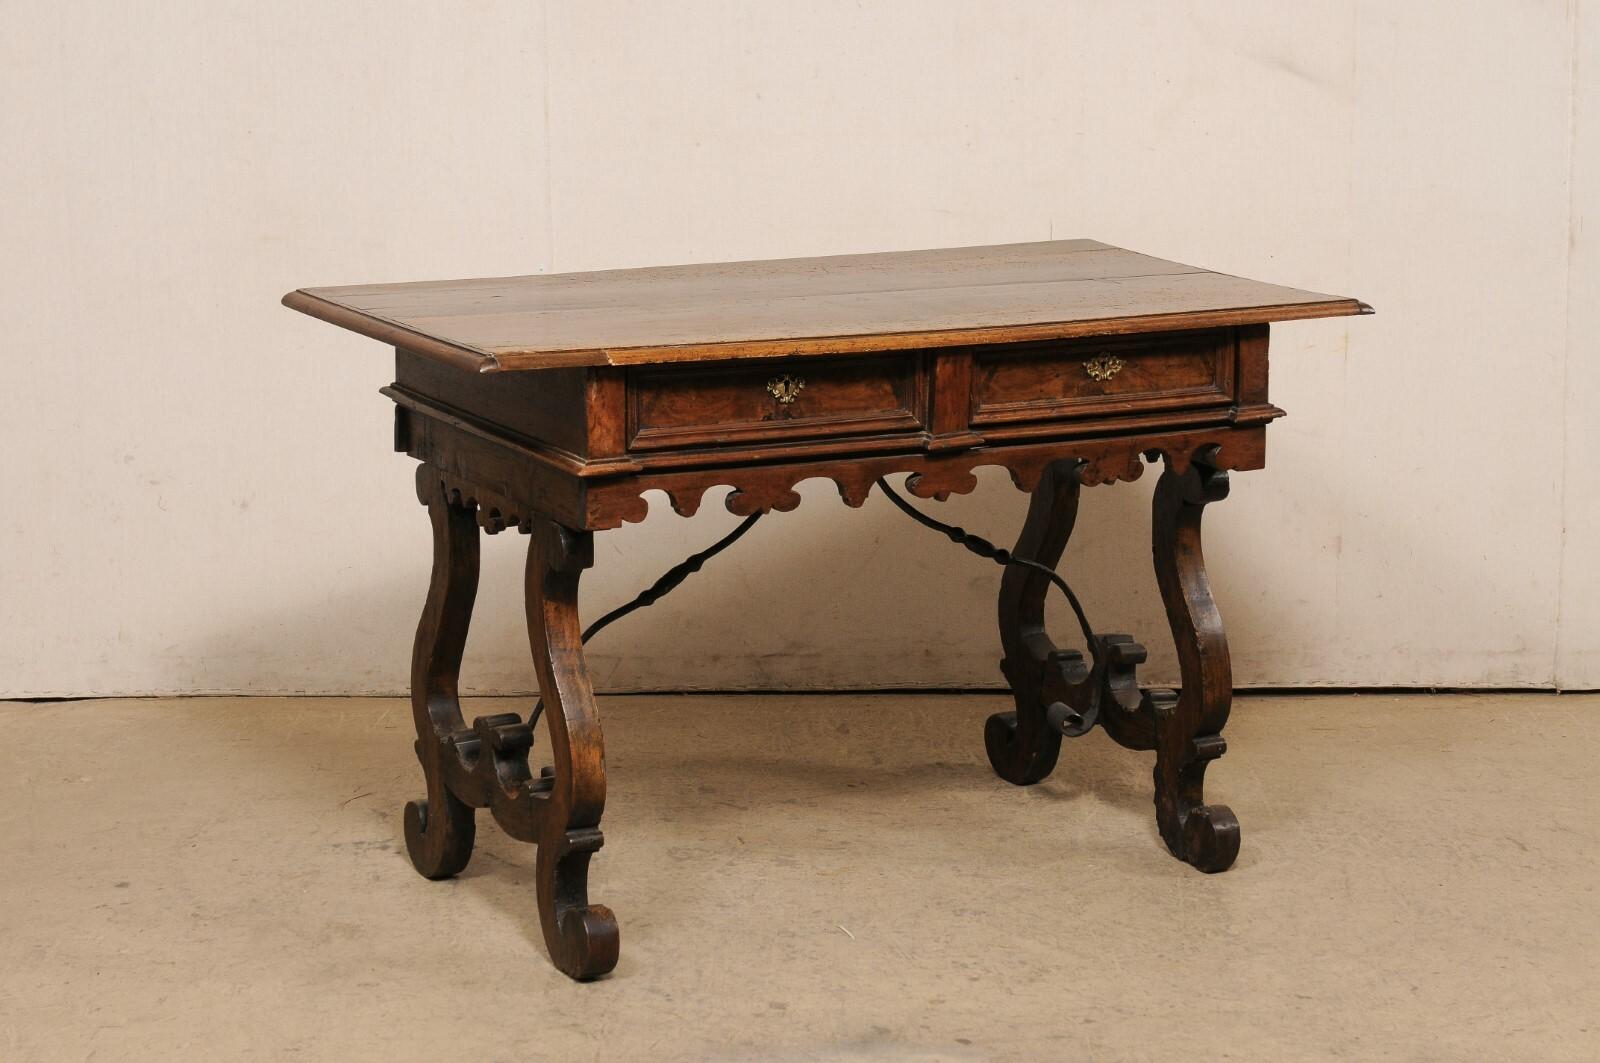 Table italienne en bois sculpté à pieds en lyre et traverse en fer du tournant des XVIIIe et XIXe siècles. Cette table ancienne d'Italie, à la mode 